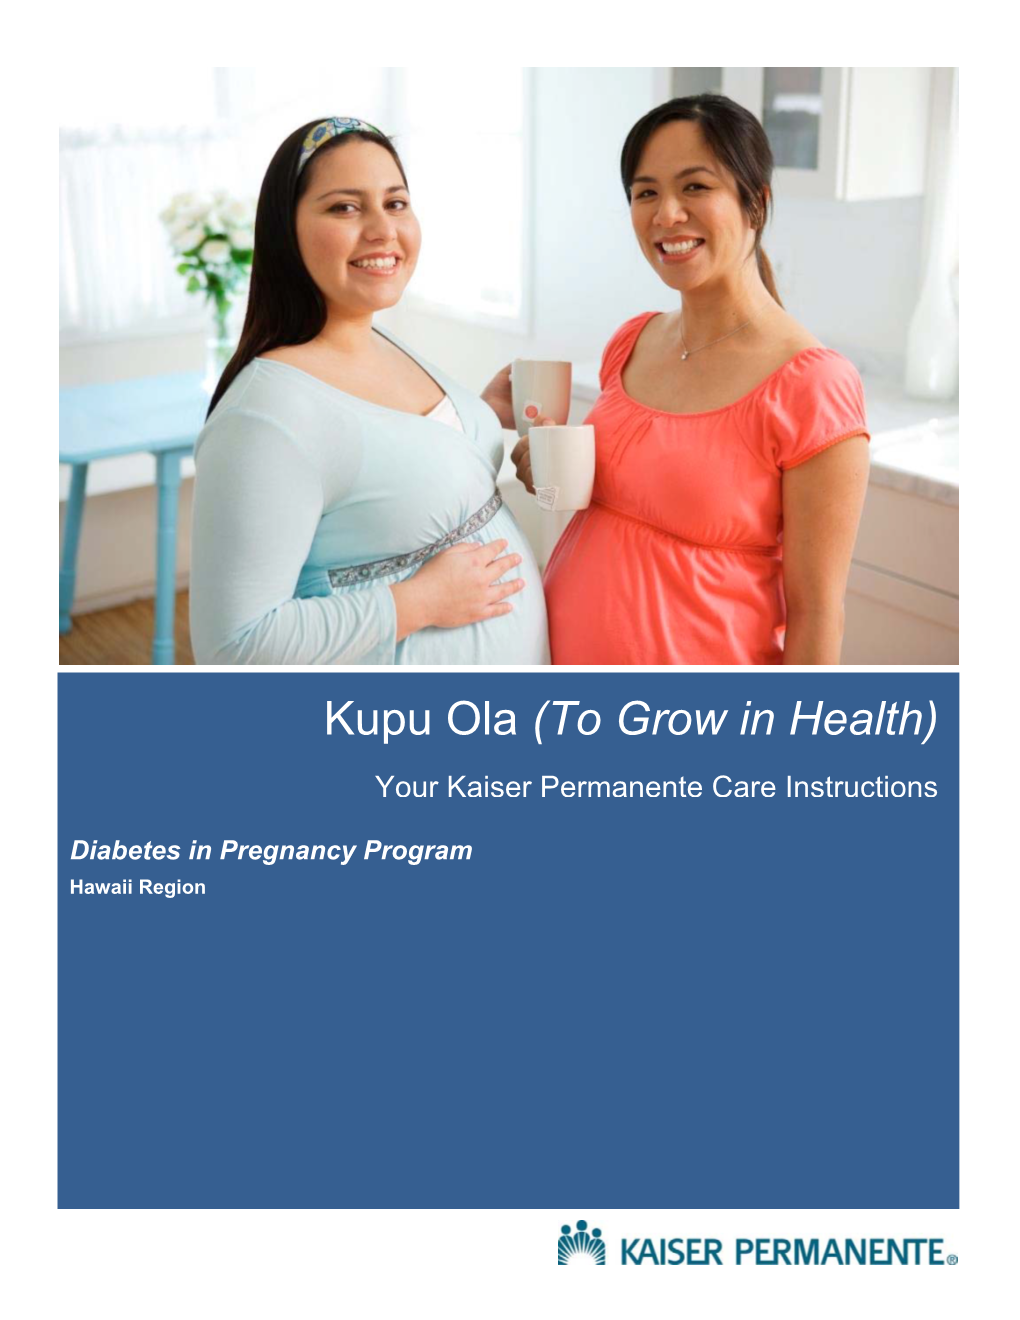 Kupu Ola Diabetes in Pregnancy Program